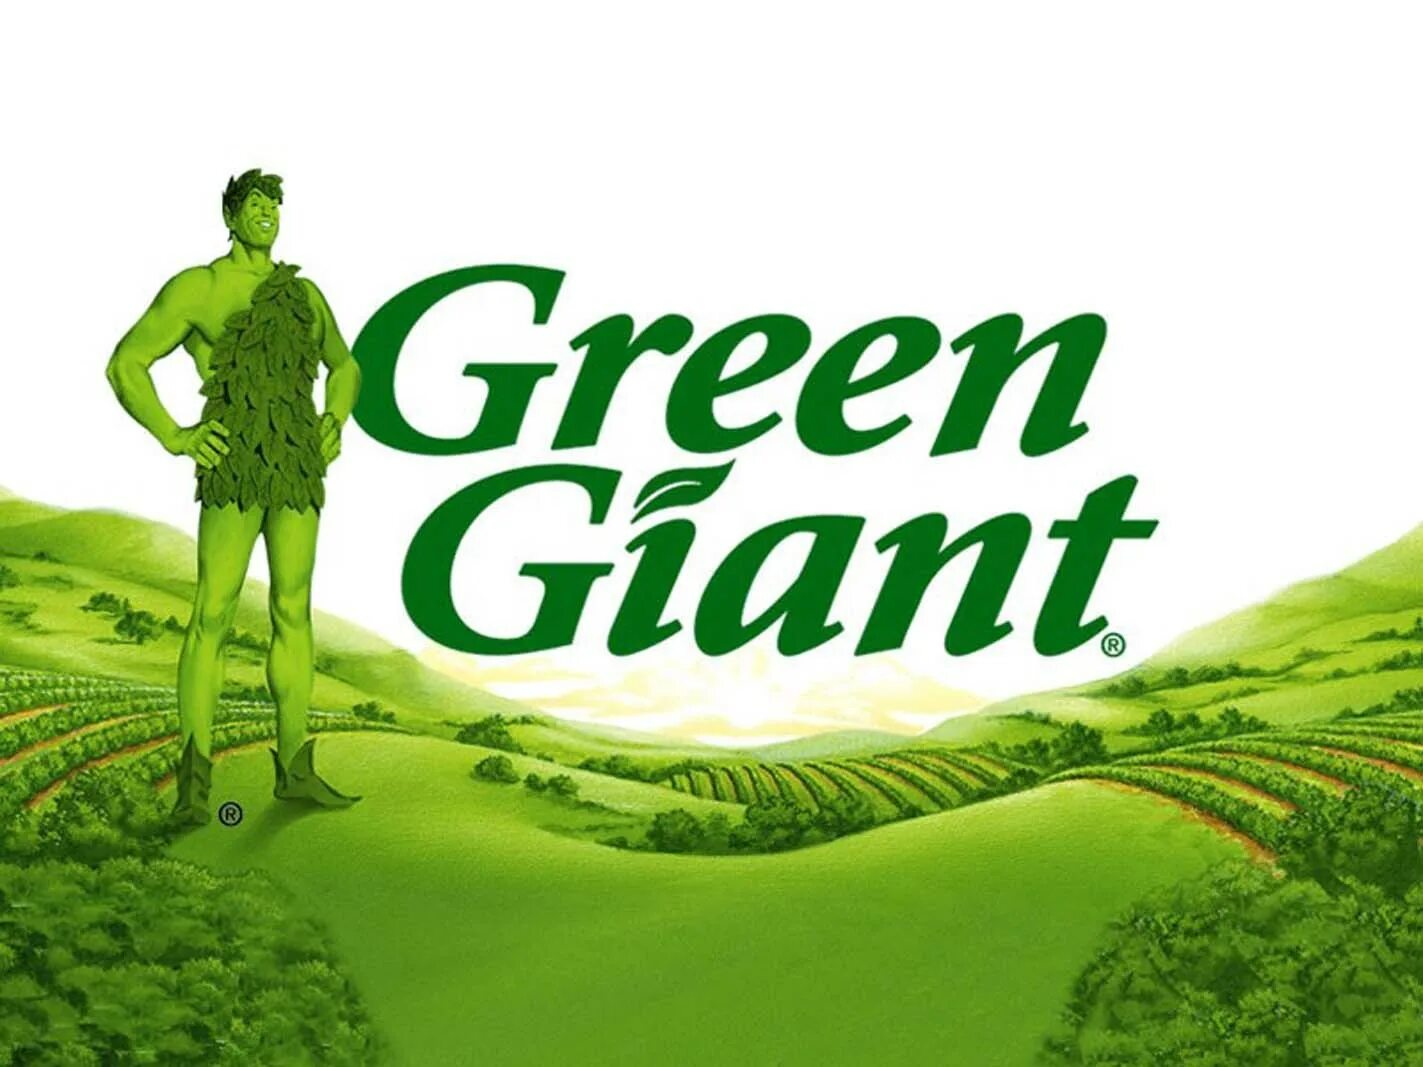 Грин гигант Green giant. Jolly Green giant Лео Бернетт. Jolly Green giant – веселый зеленый великан. Лео Бернетт реклама Green giant. Семь зеленых людей